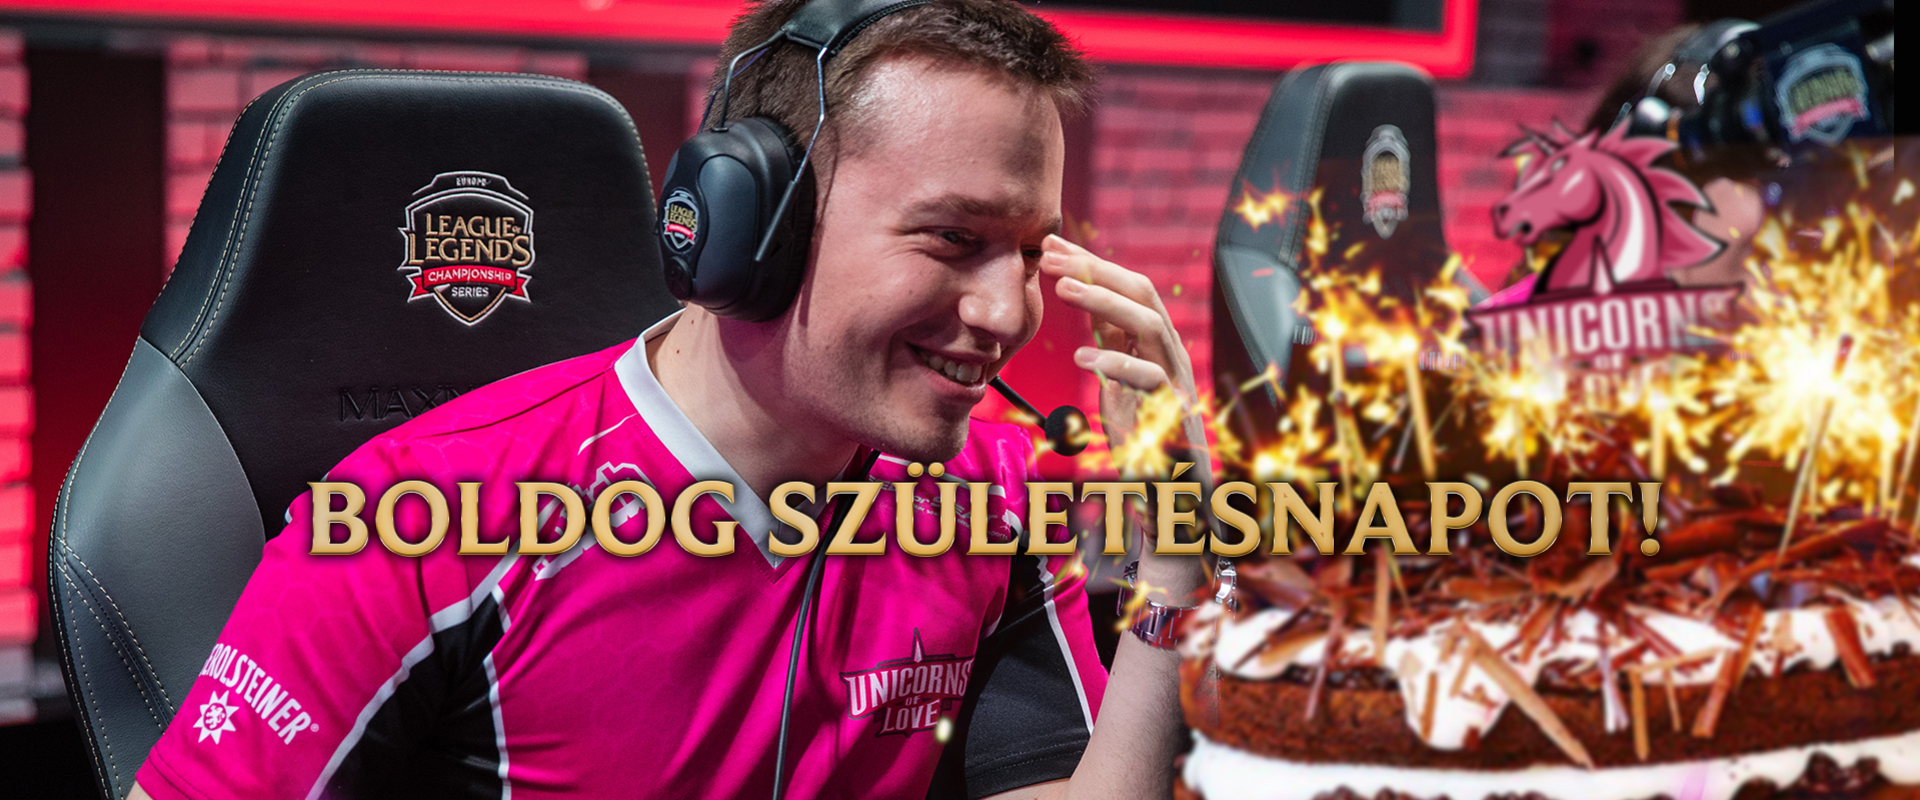 Boldog születésnapot a legsikeresebb magyar LoL játékosnak, Vizicsacsinak!